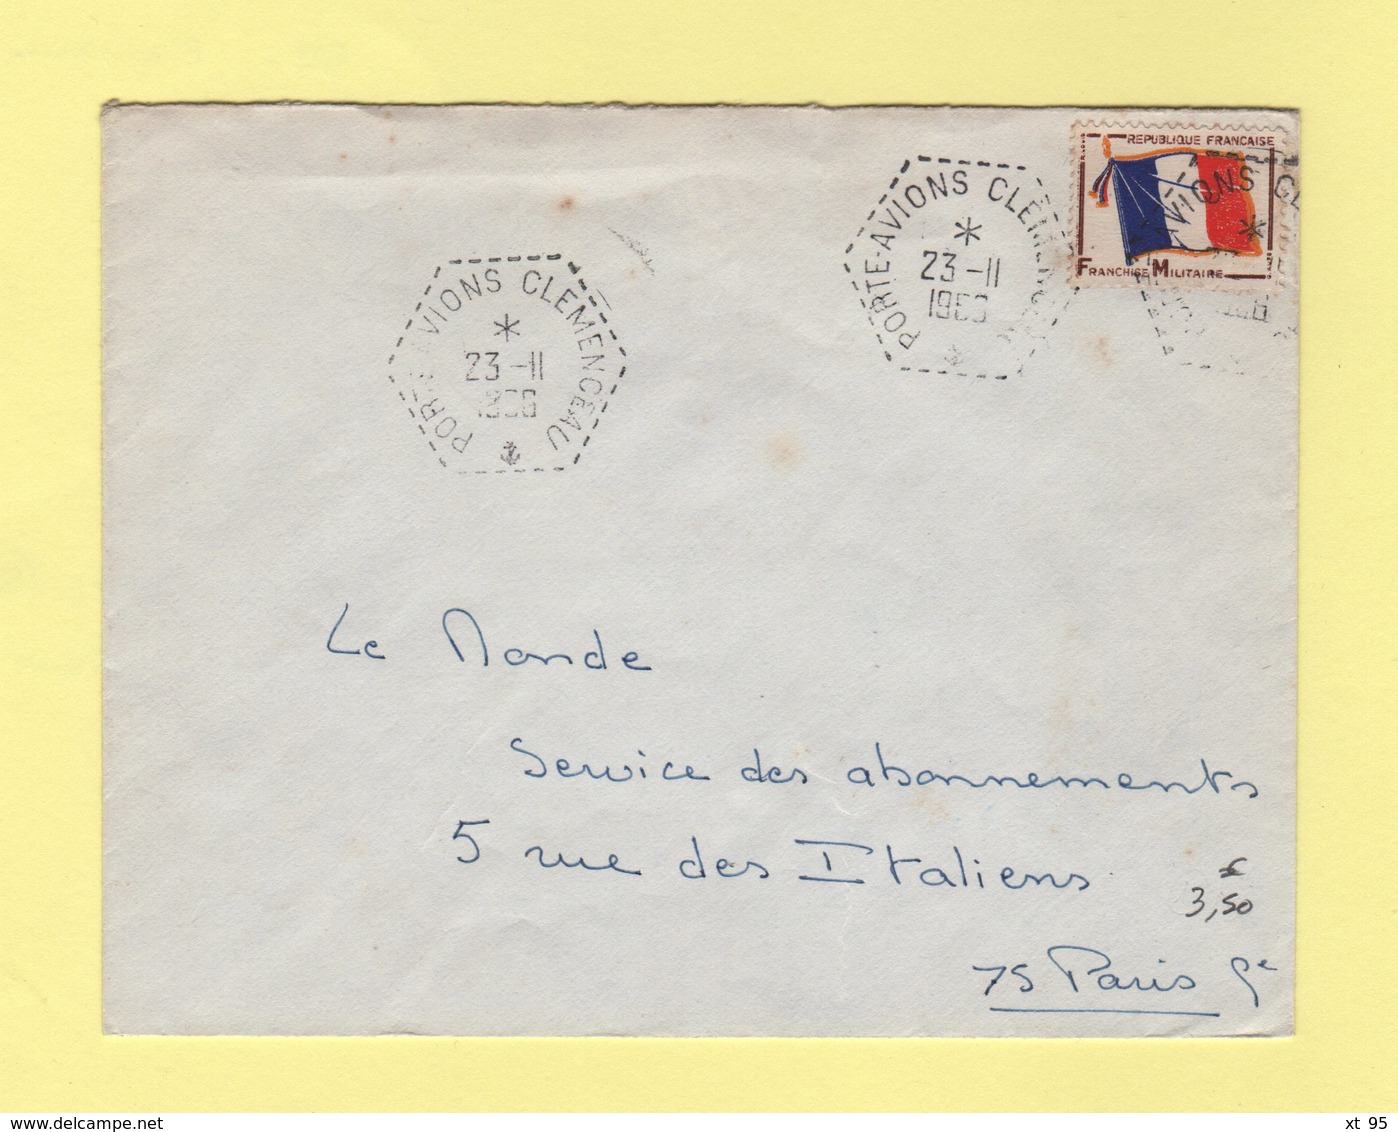 Poste Navale - Porte Avion Clemenceau - 23-11-1966 - Timbre FM - Naval Post